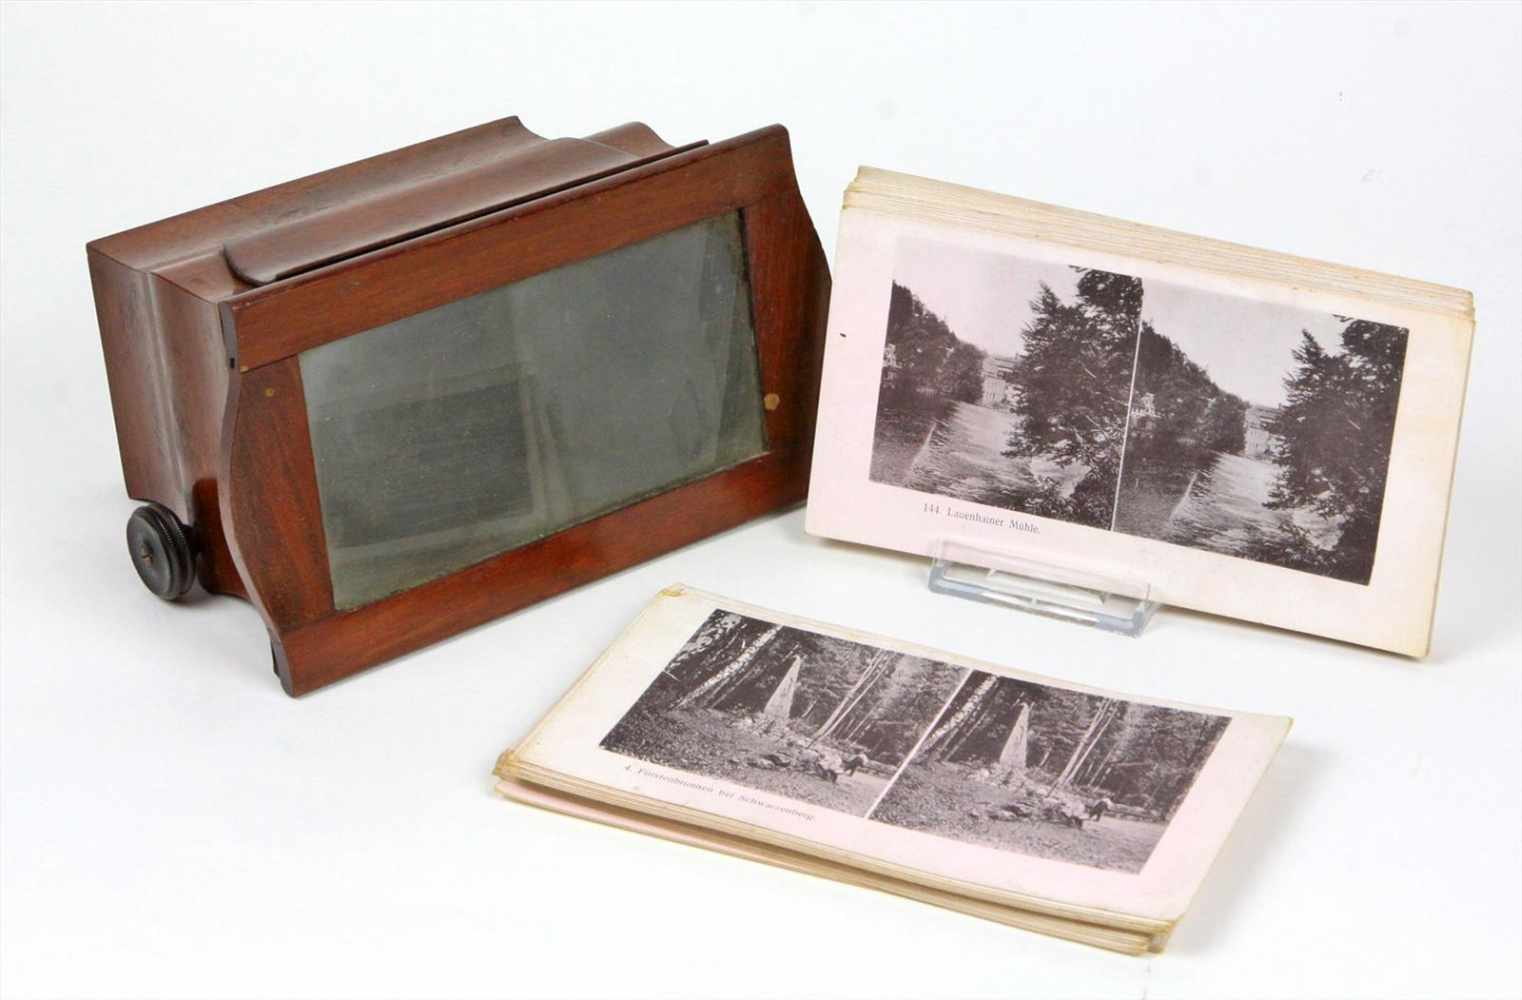 Stereobetrachter mit Bildersatz aus Nußbaum ca. 11 x 20 x 13 cm dazu ungezähltes Konvolut